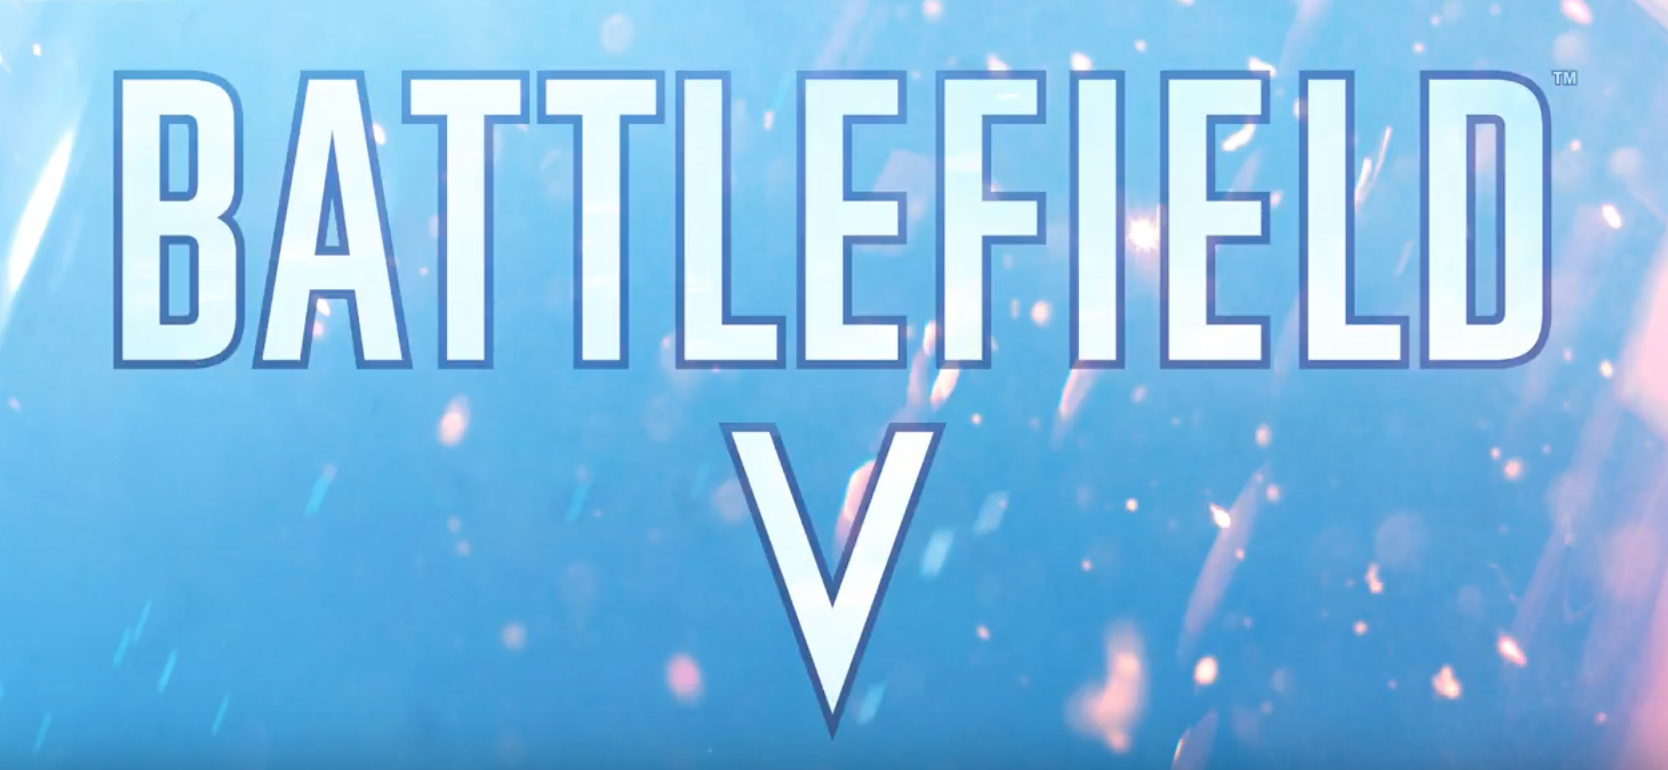 Battlefield 5 Live Reveal: revela trailer, mapas gratuitos e quatro jogadores cooperativos